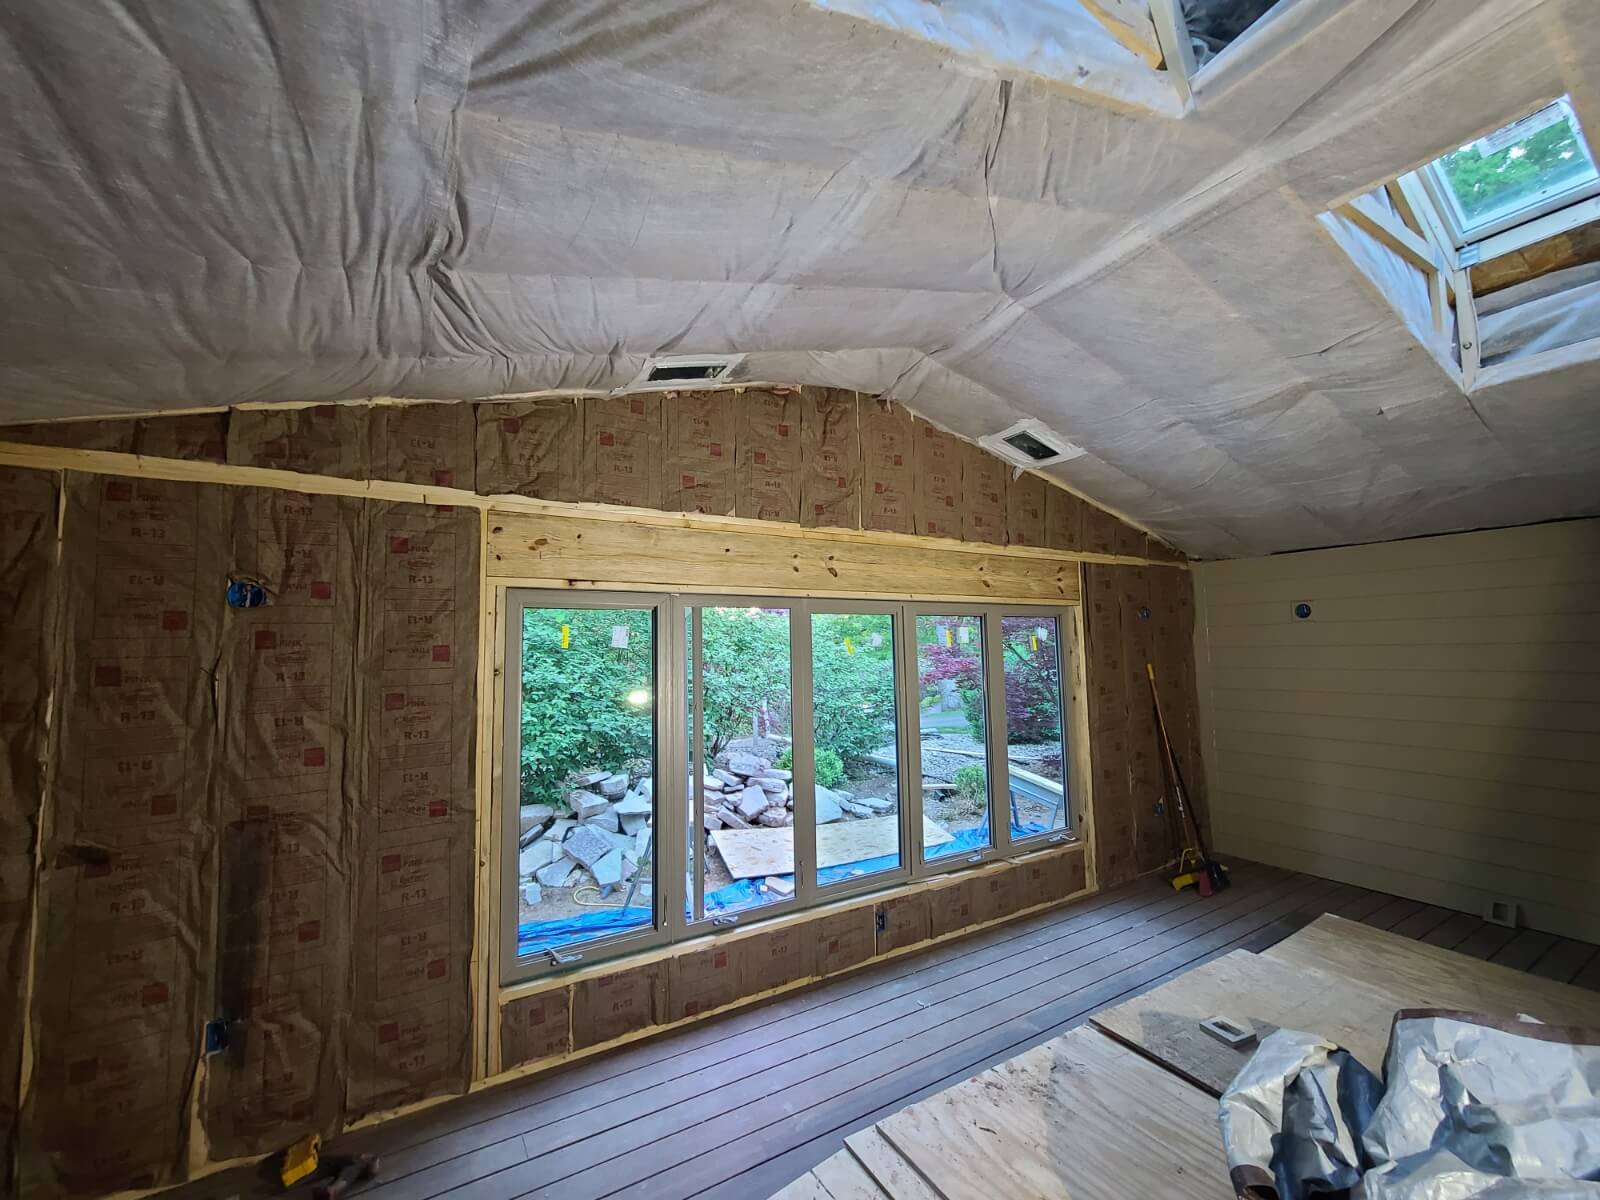 North Chicagoland attic insulation company